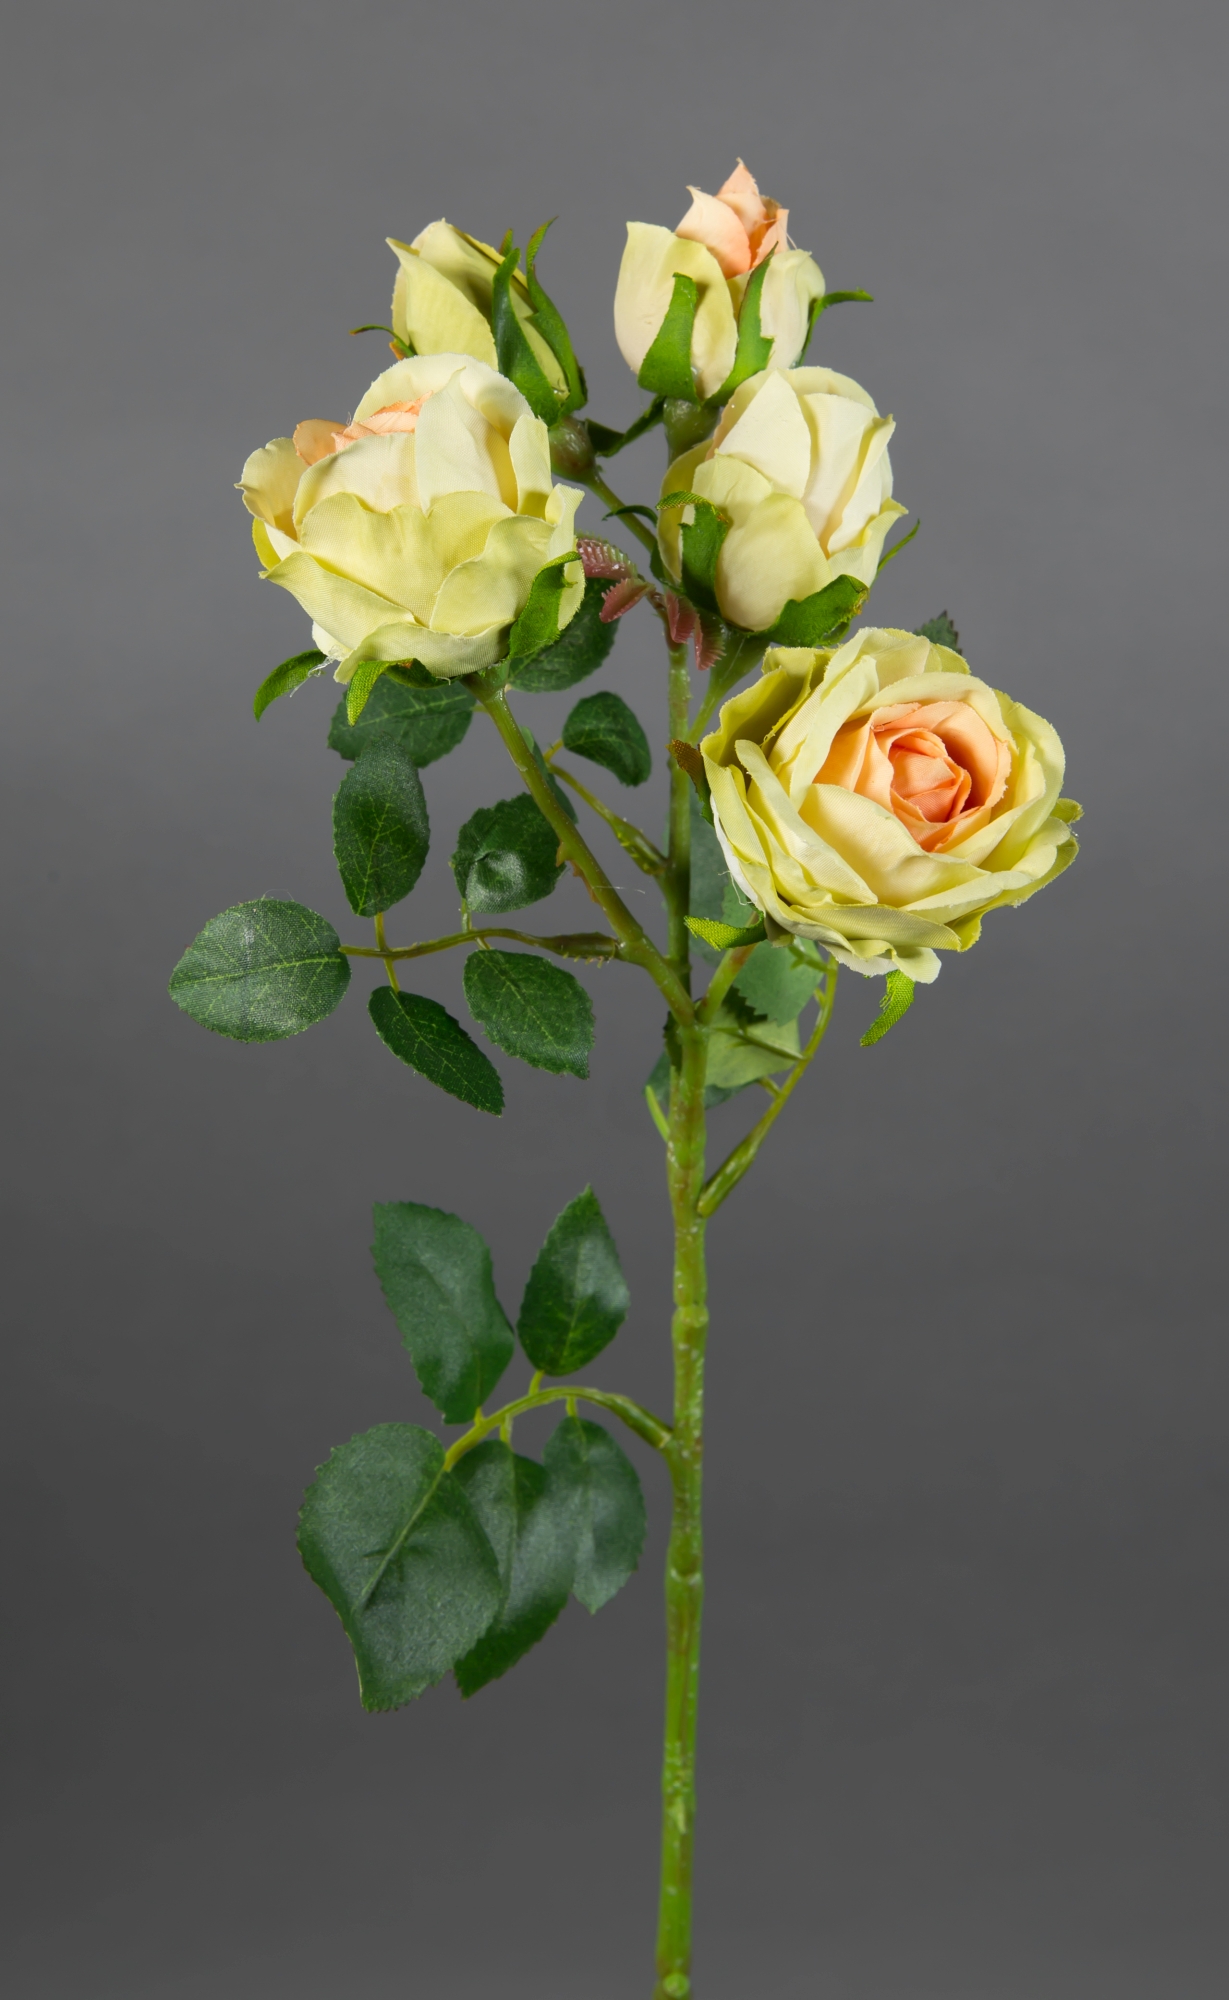 Kunstblumen künstliche creme-peach-grün Seidenblumen Rose Rosen GA Rosenzweig 40cm